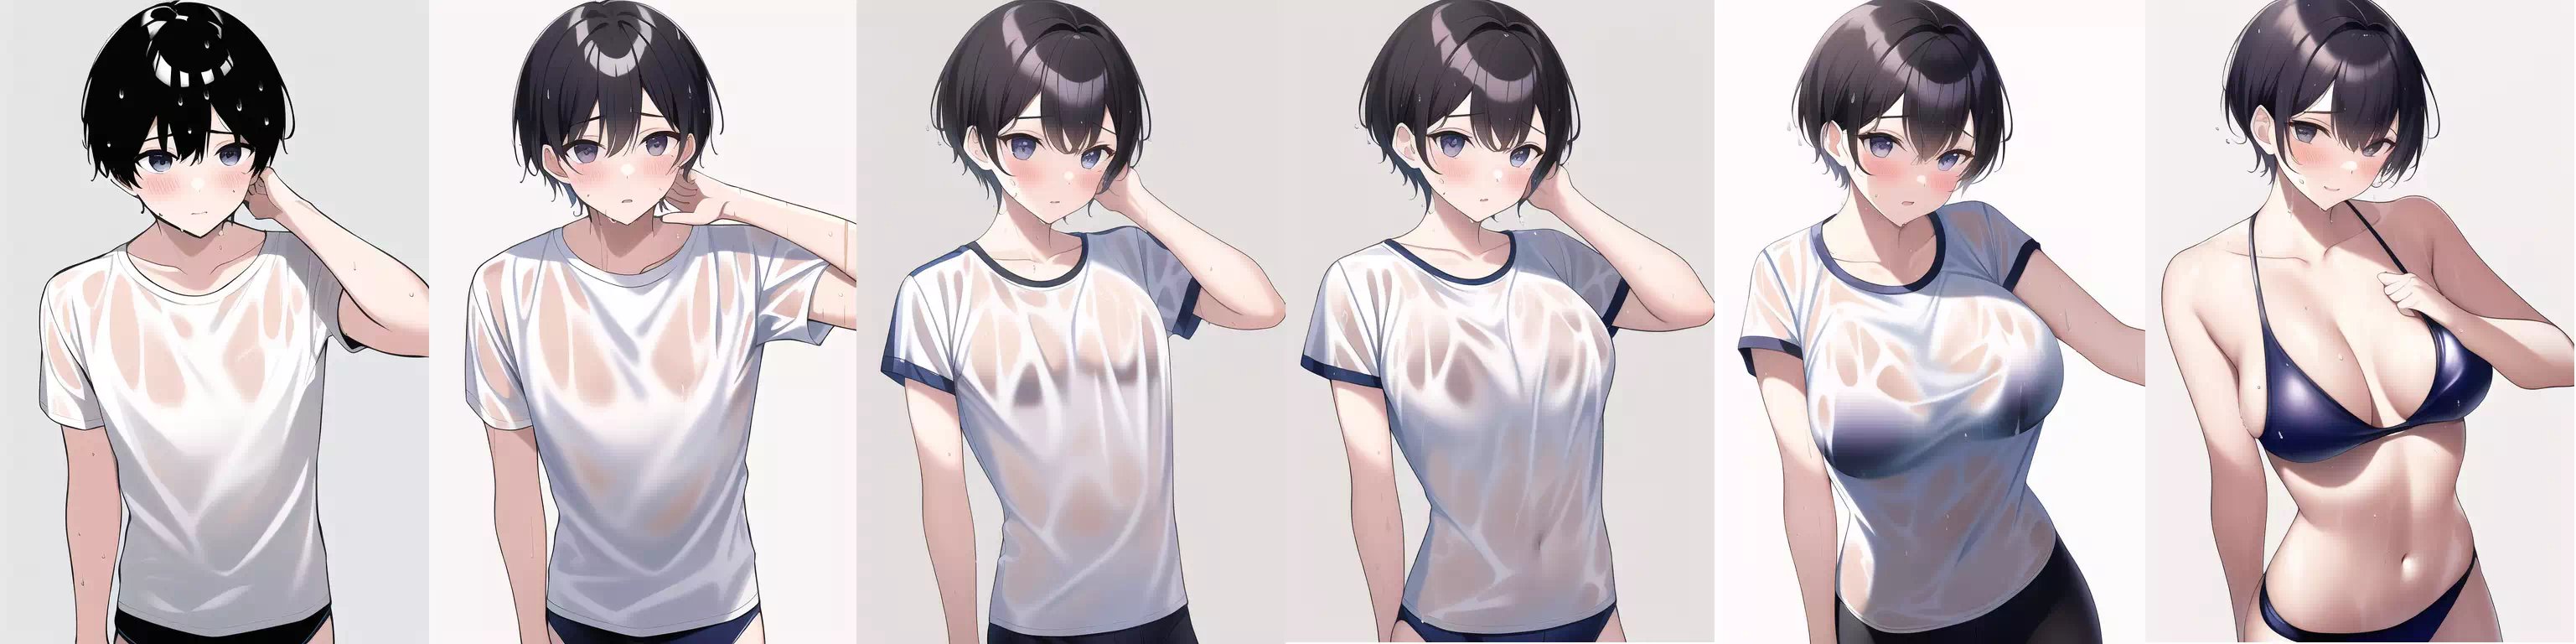 濡れTシャツの少年→水着の女性TSF